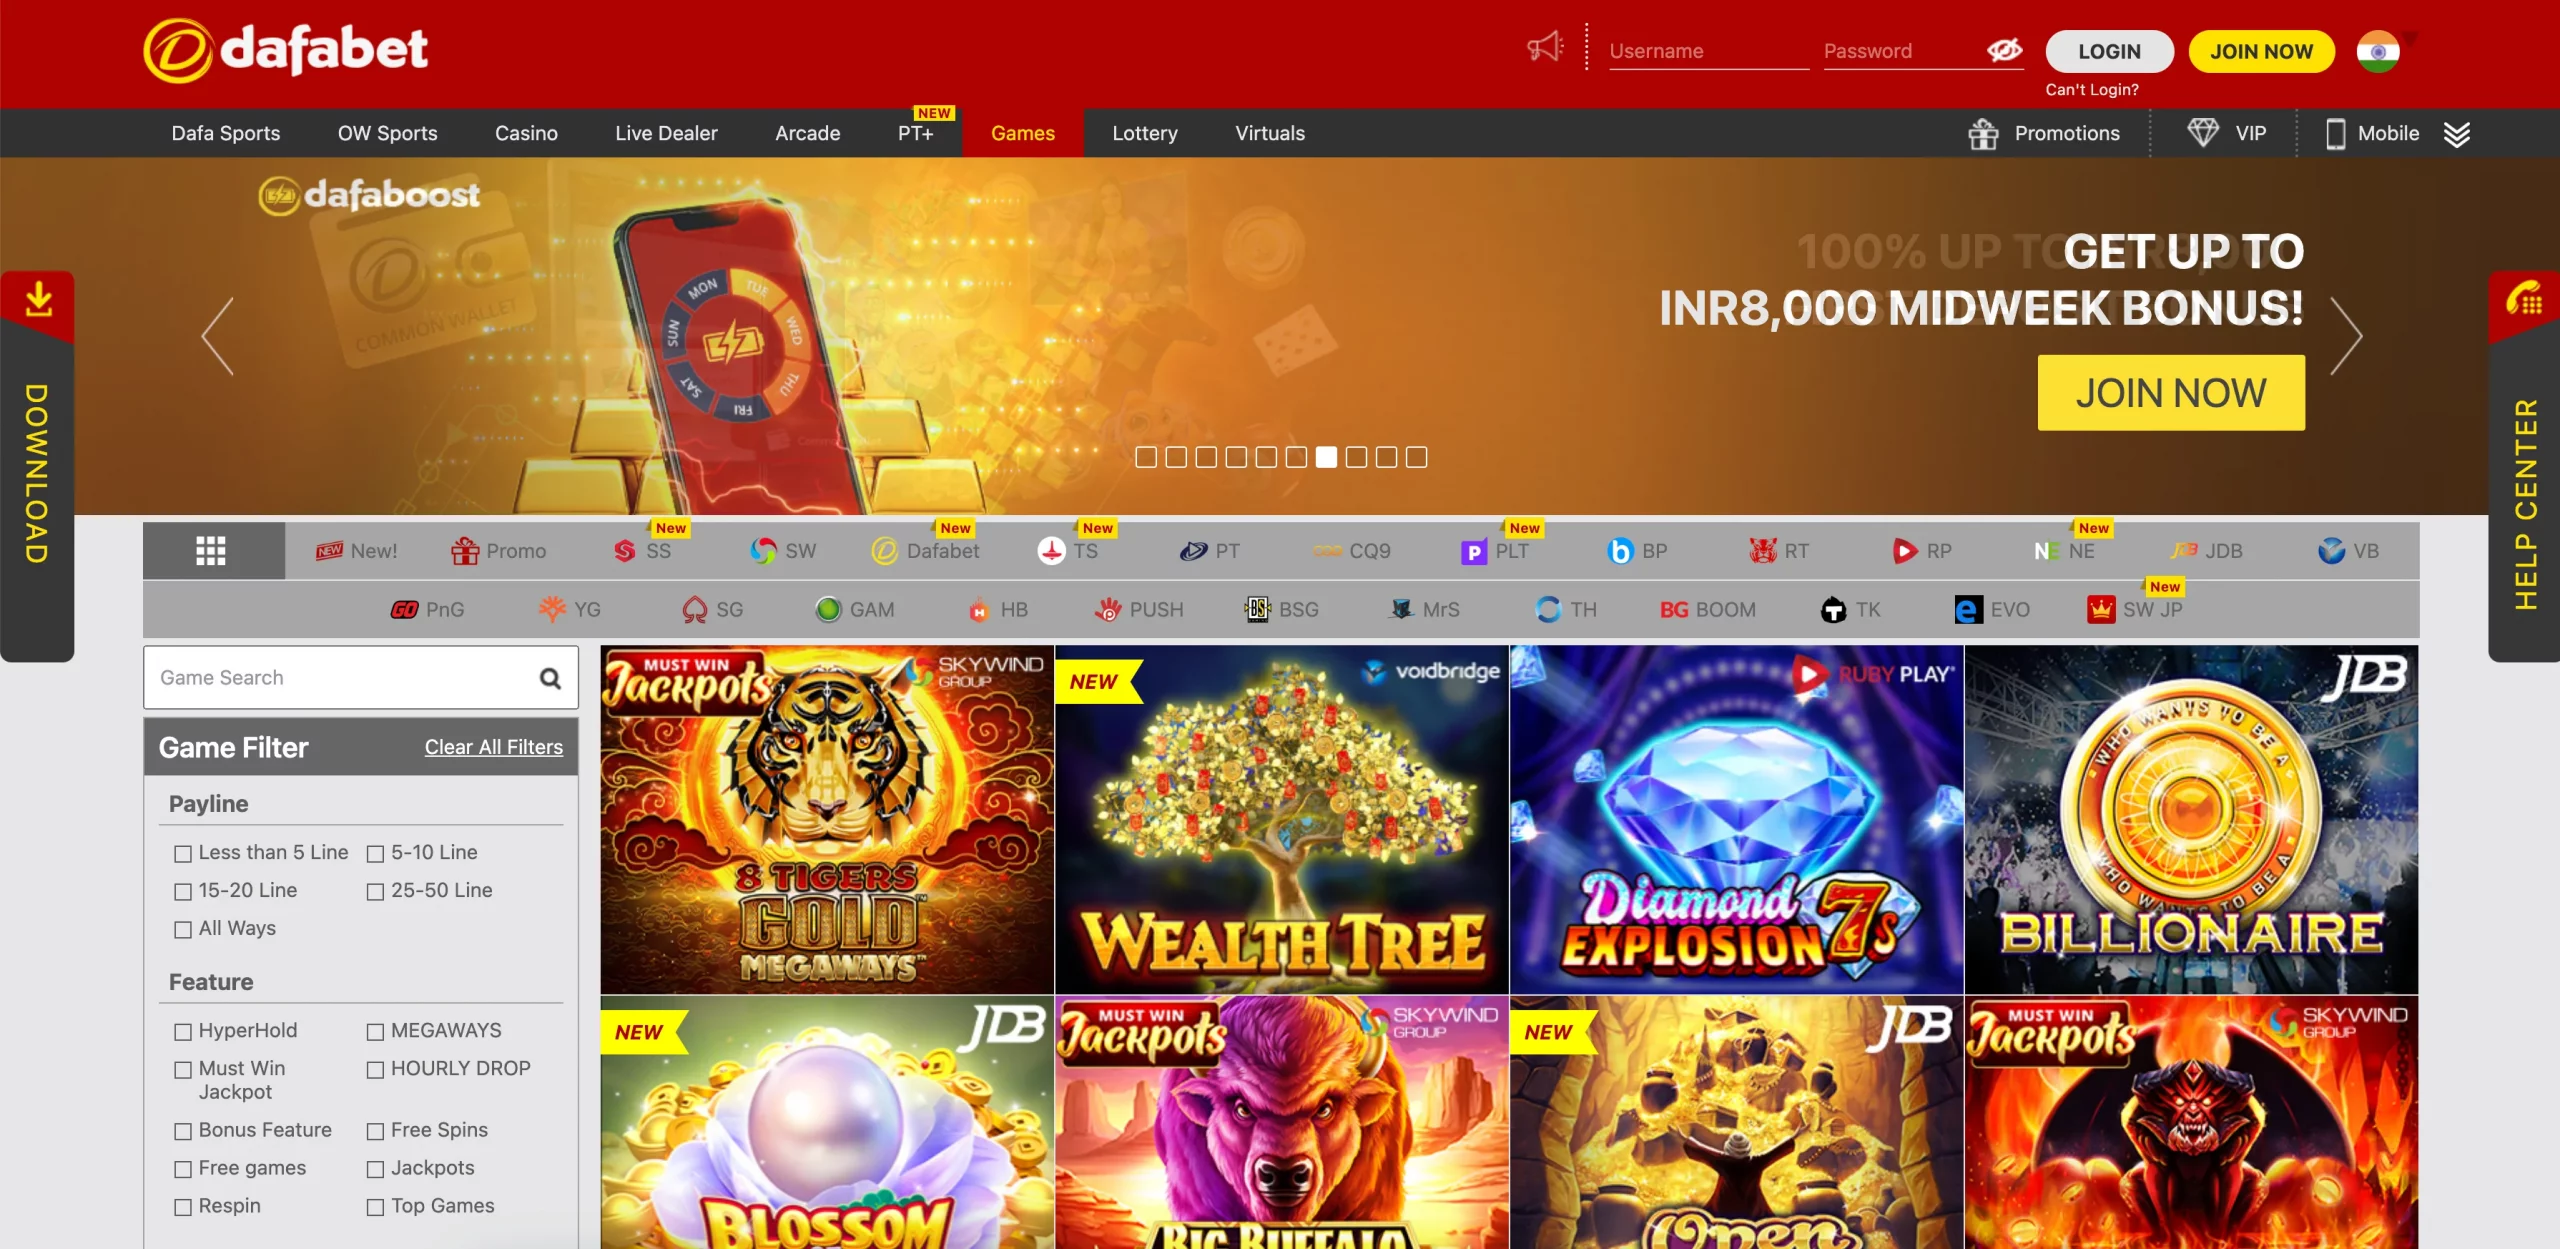 Dafabet Casino india games